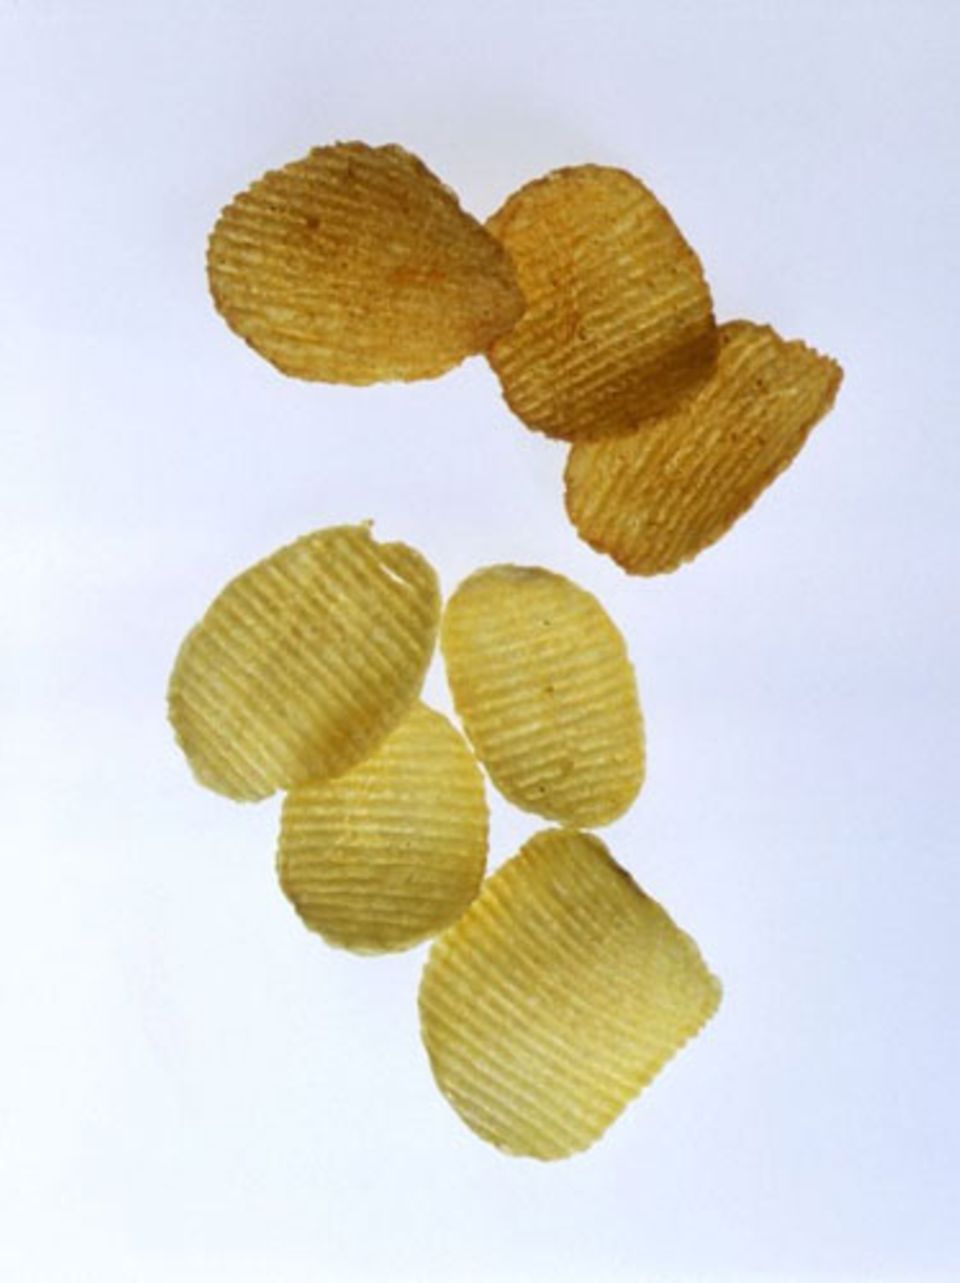 Chips "light" - einwechseln oder nicht?